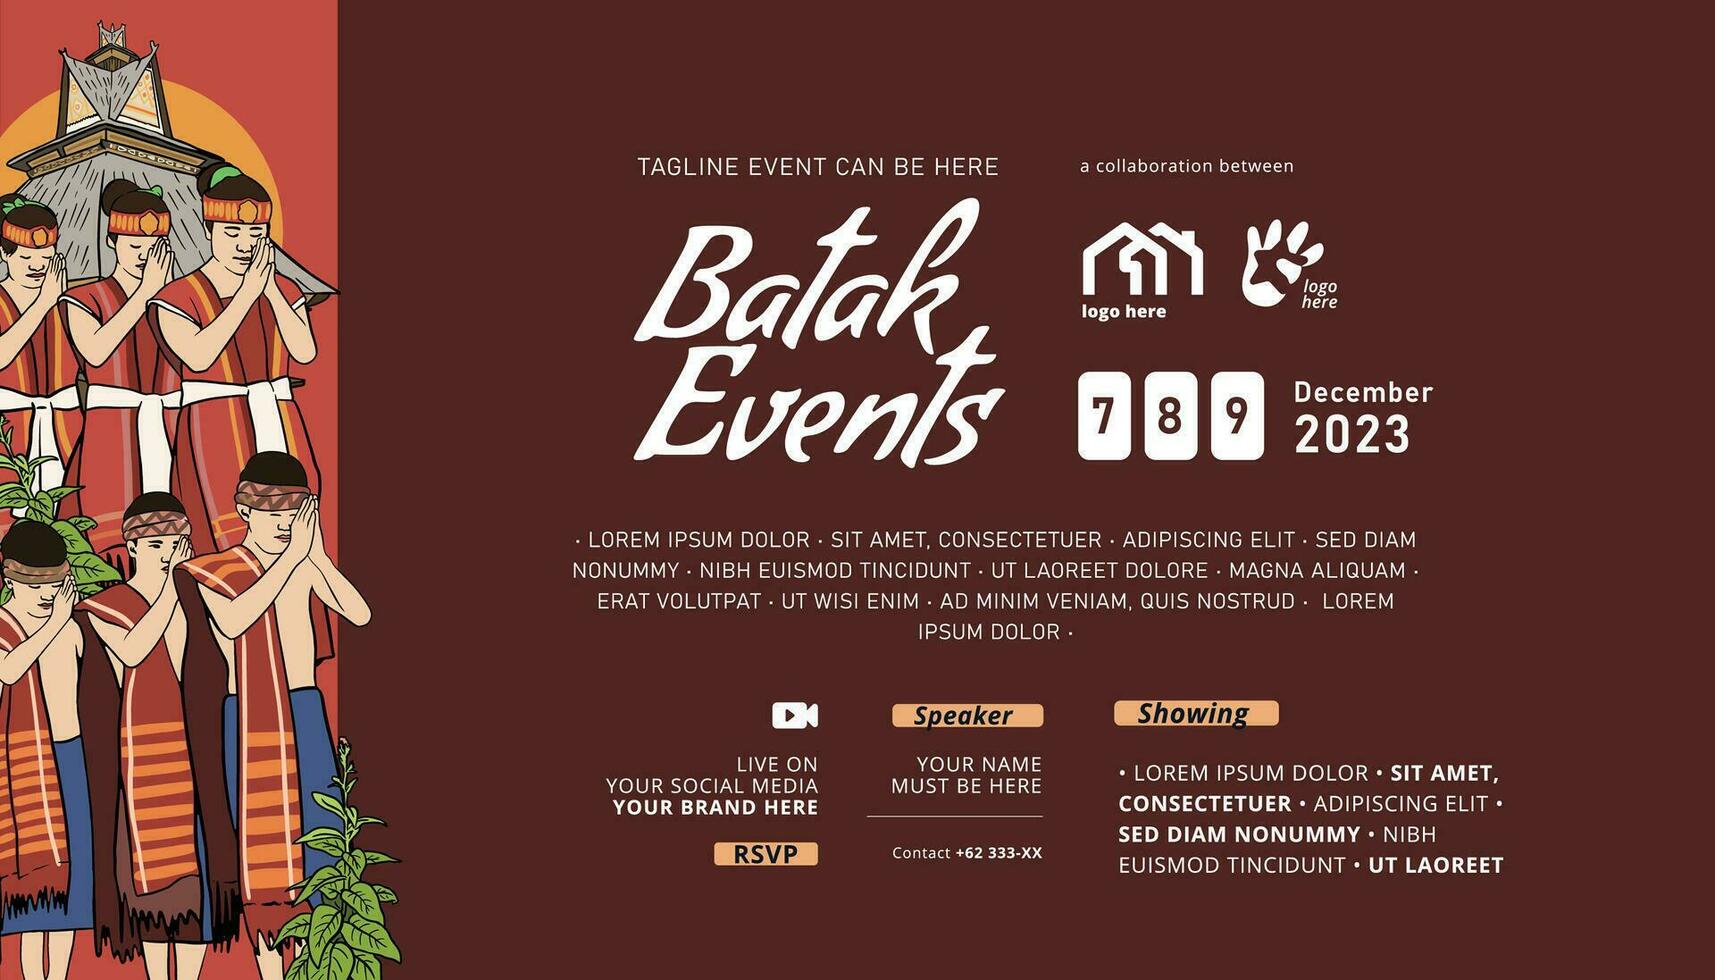 årgång indonesien bataknese design layout aning för social media eller händelse affisch vektor